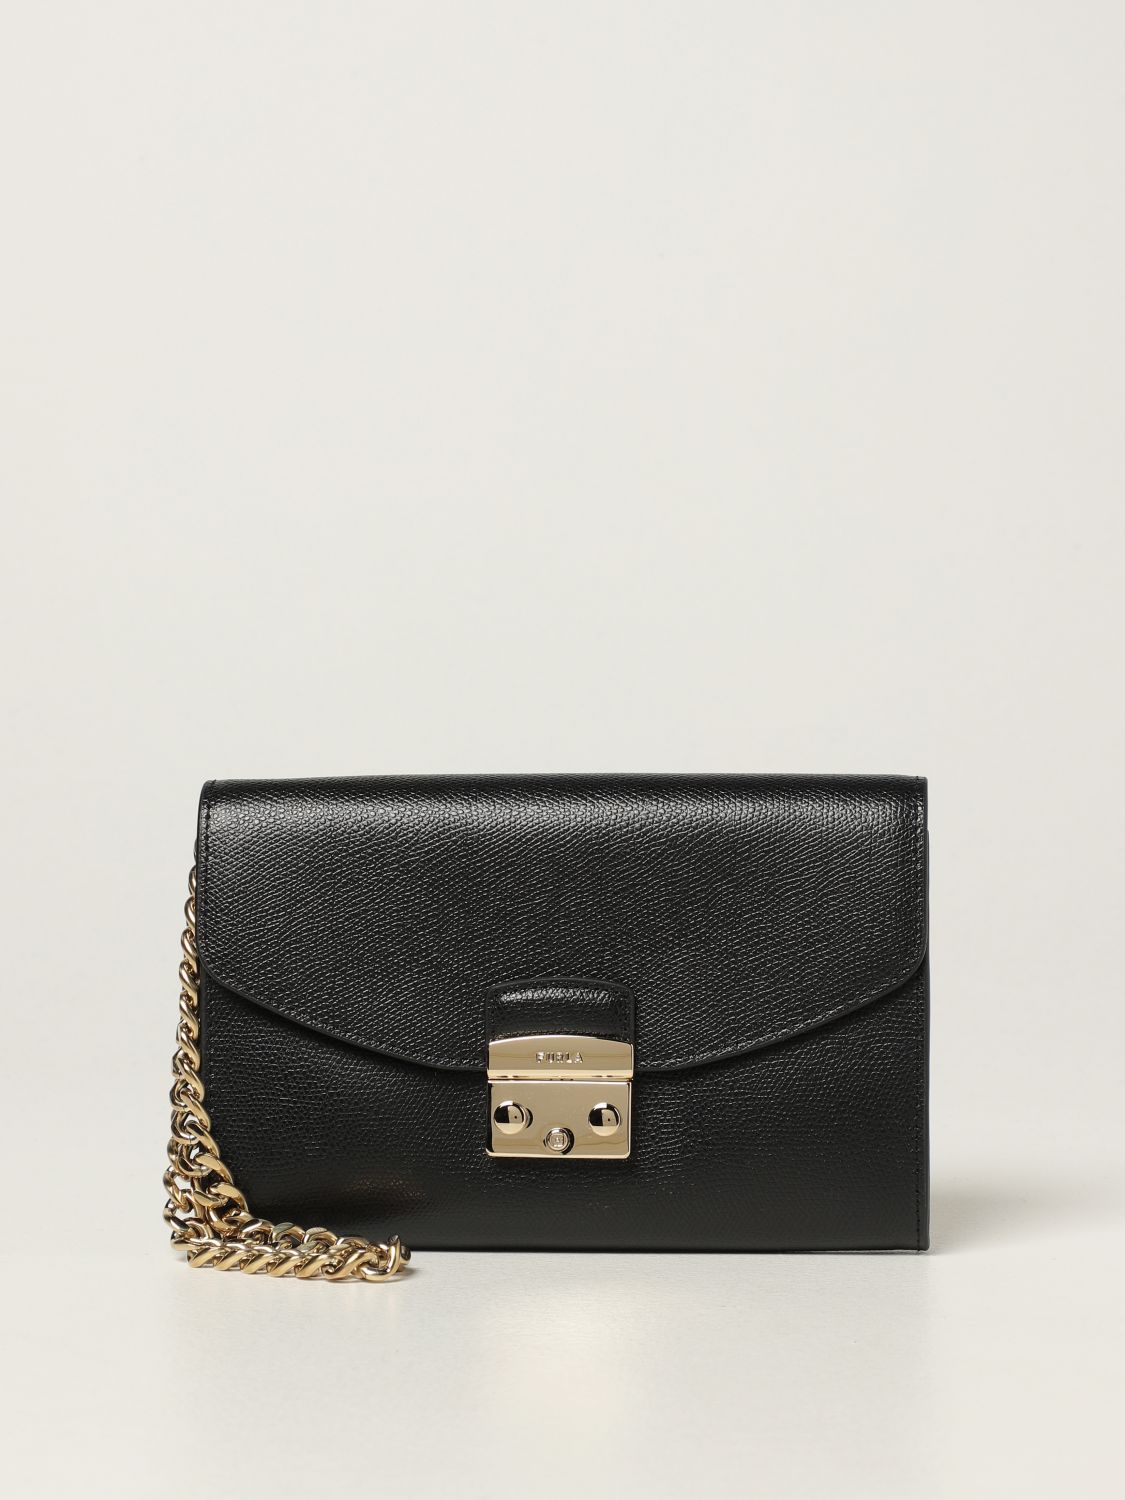 FURLA: Metropolis leather bag - Black | Furla clutch WE00120ARE000 ...